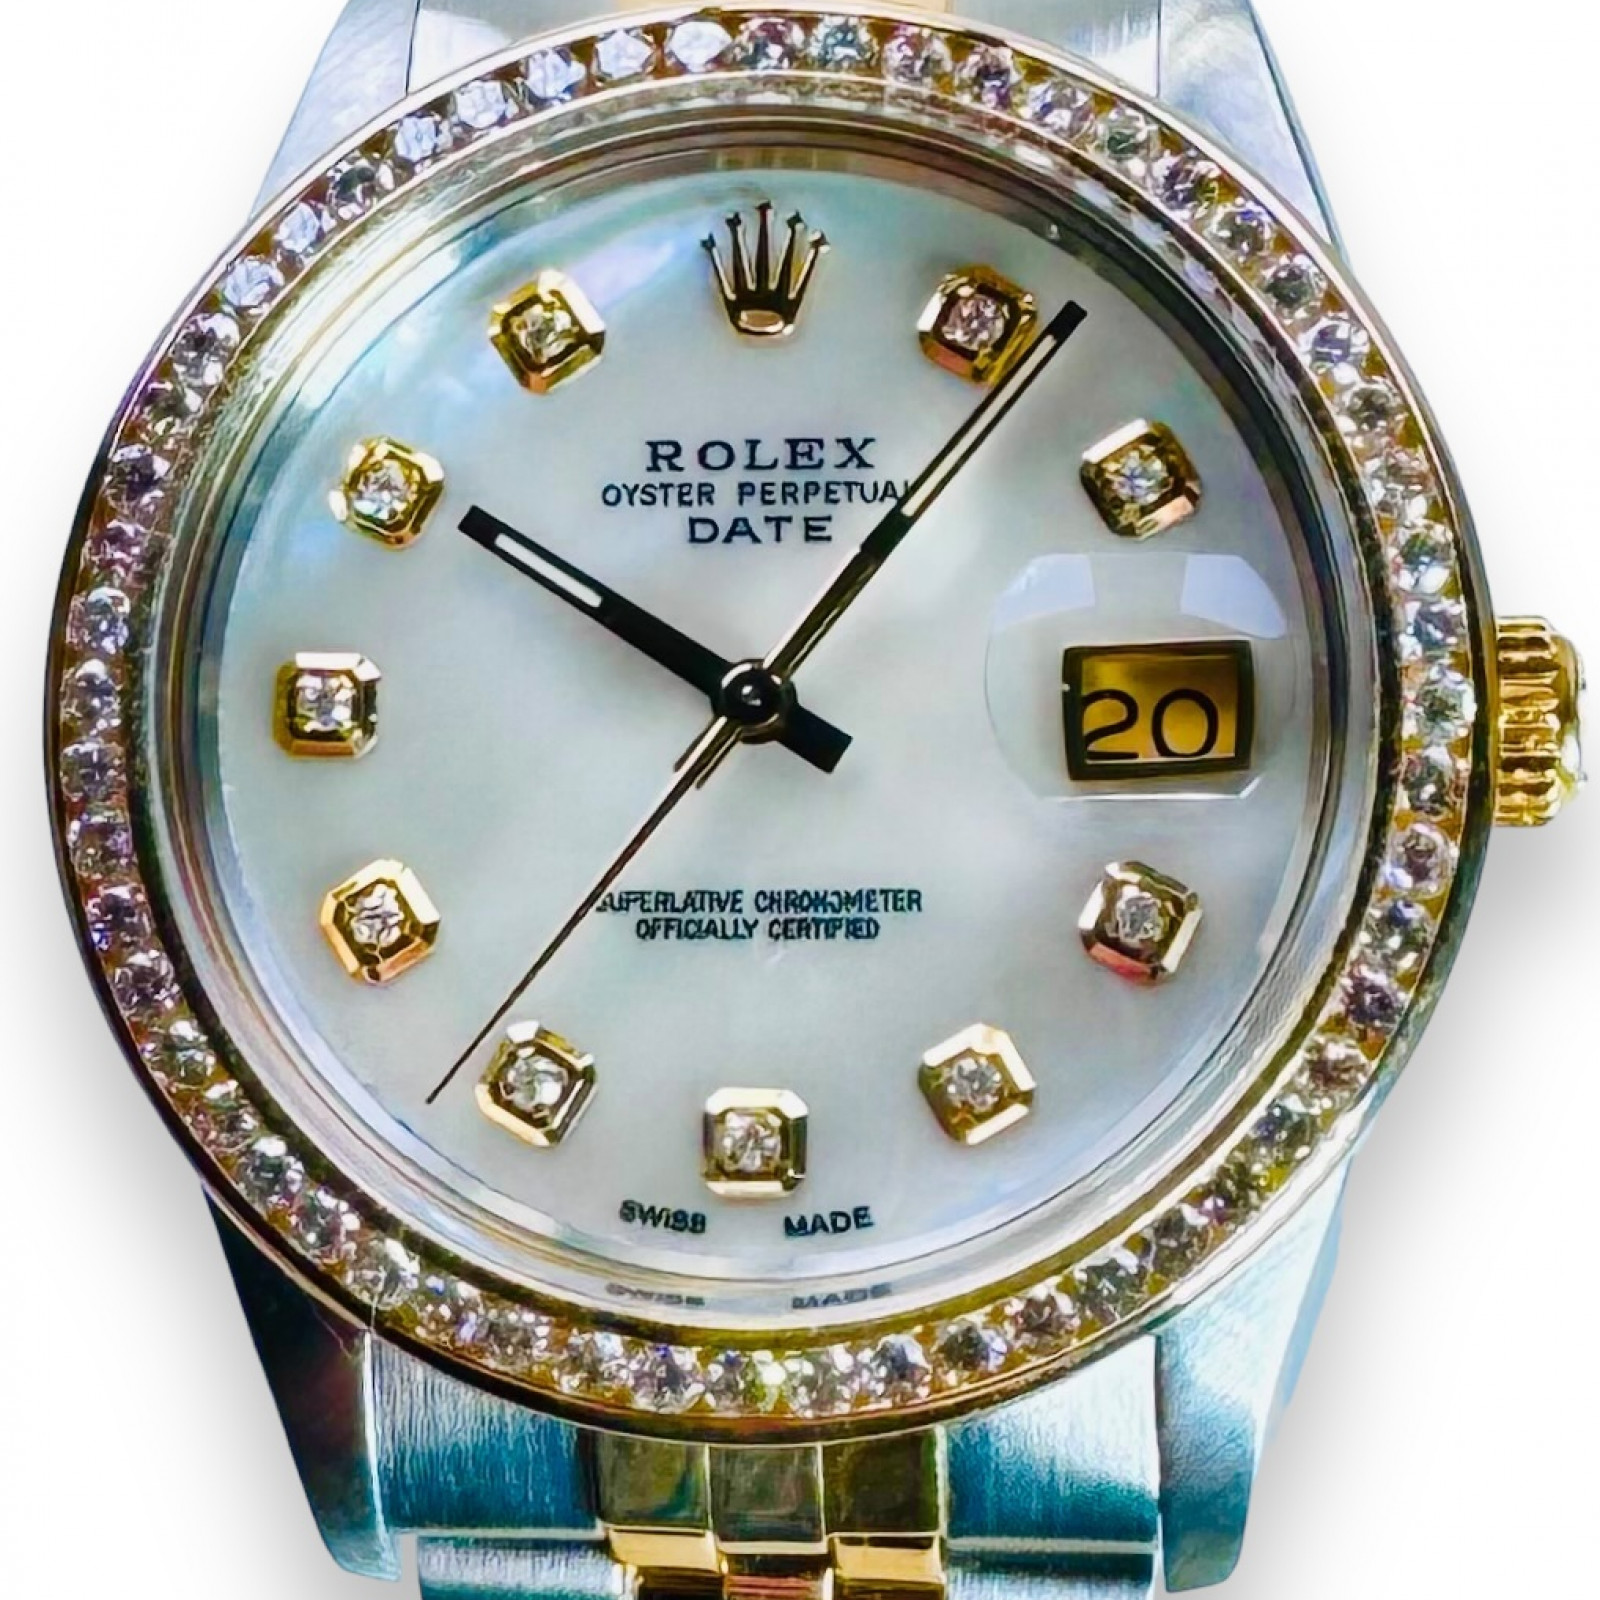 Rolex Date 15053 Diamond Bezel